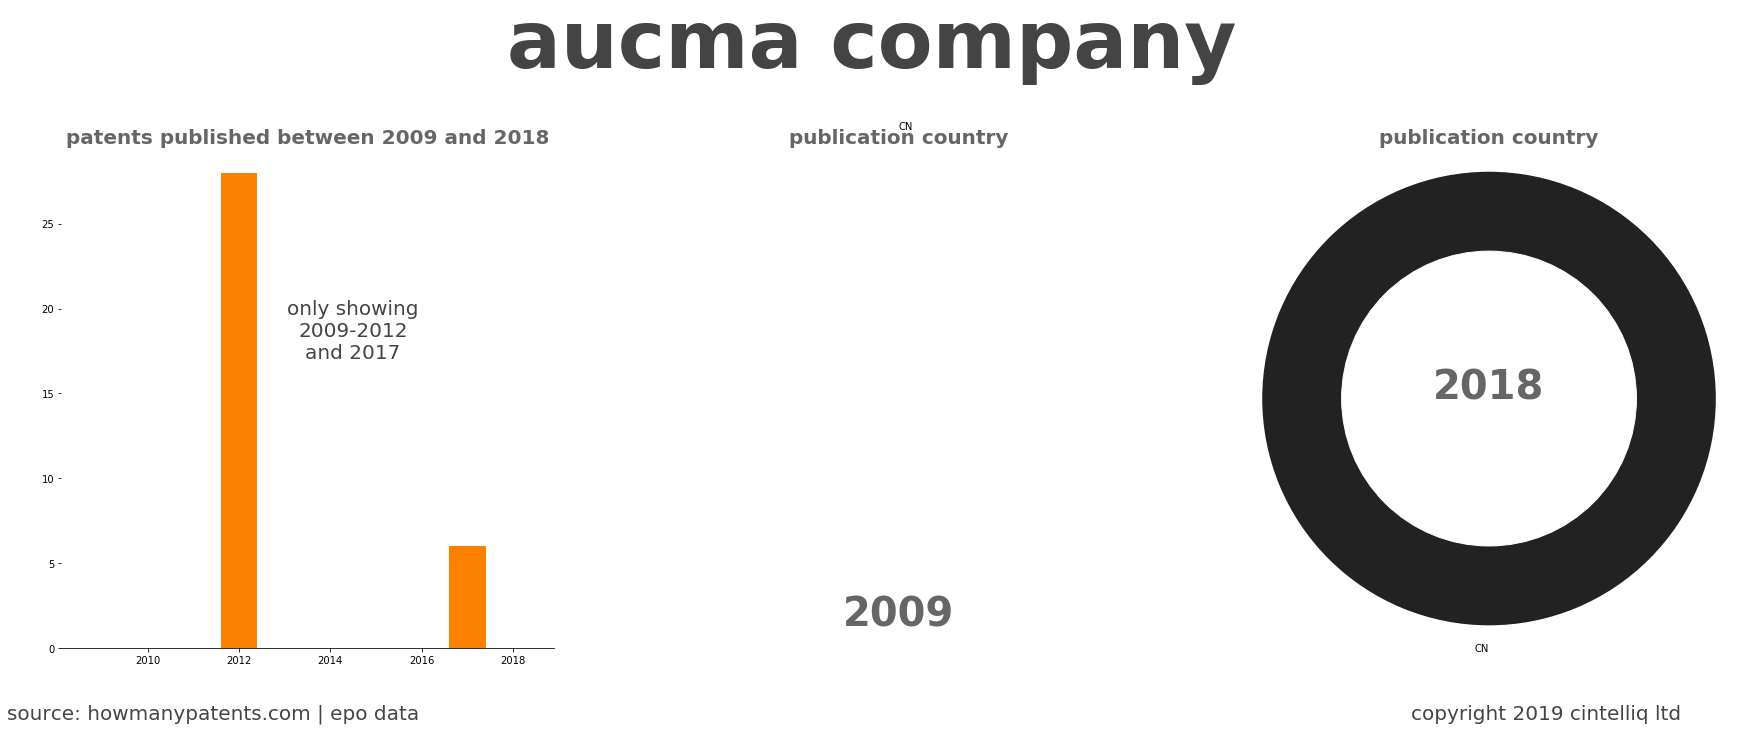 summary of patents for Aucma Company